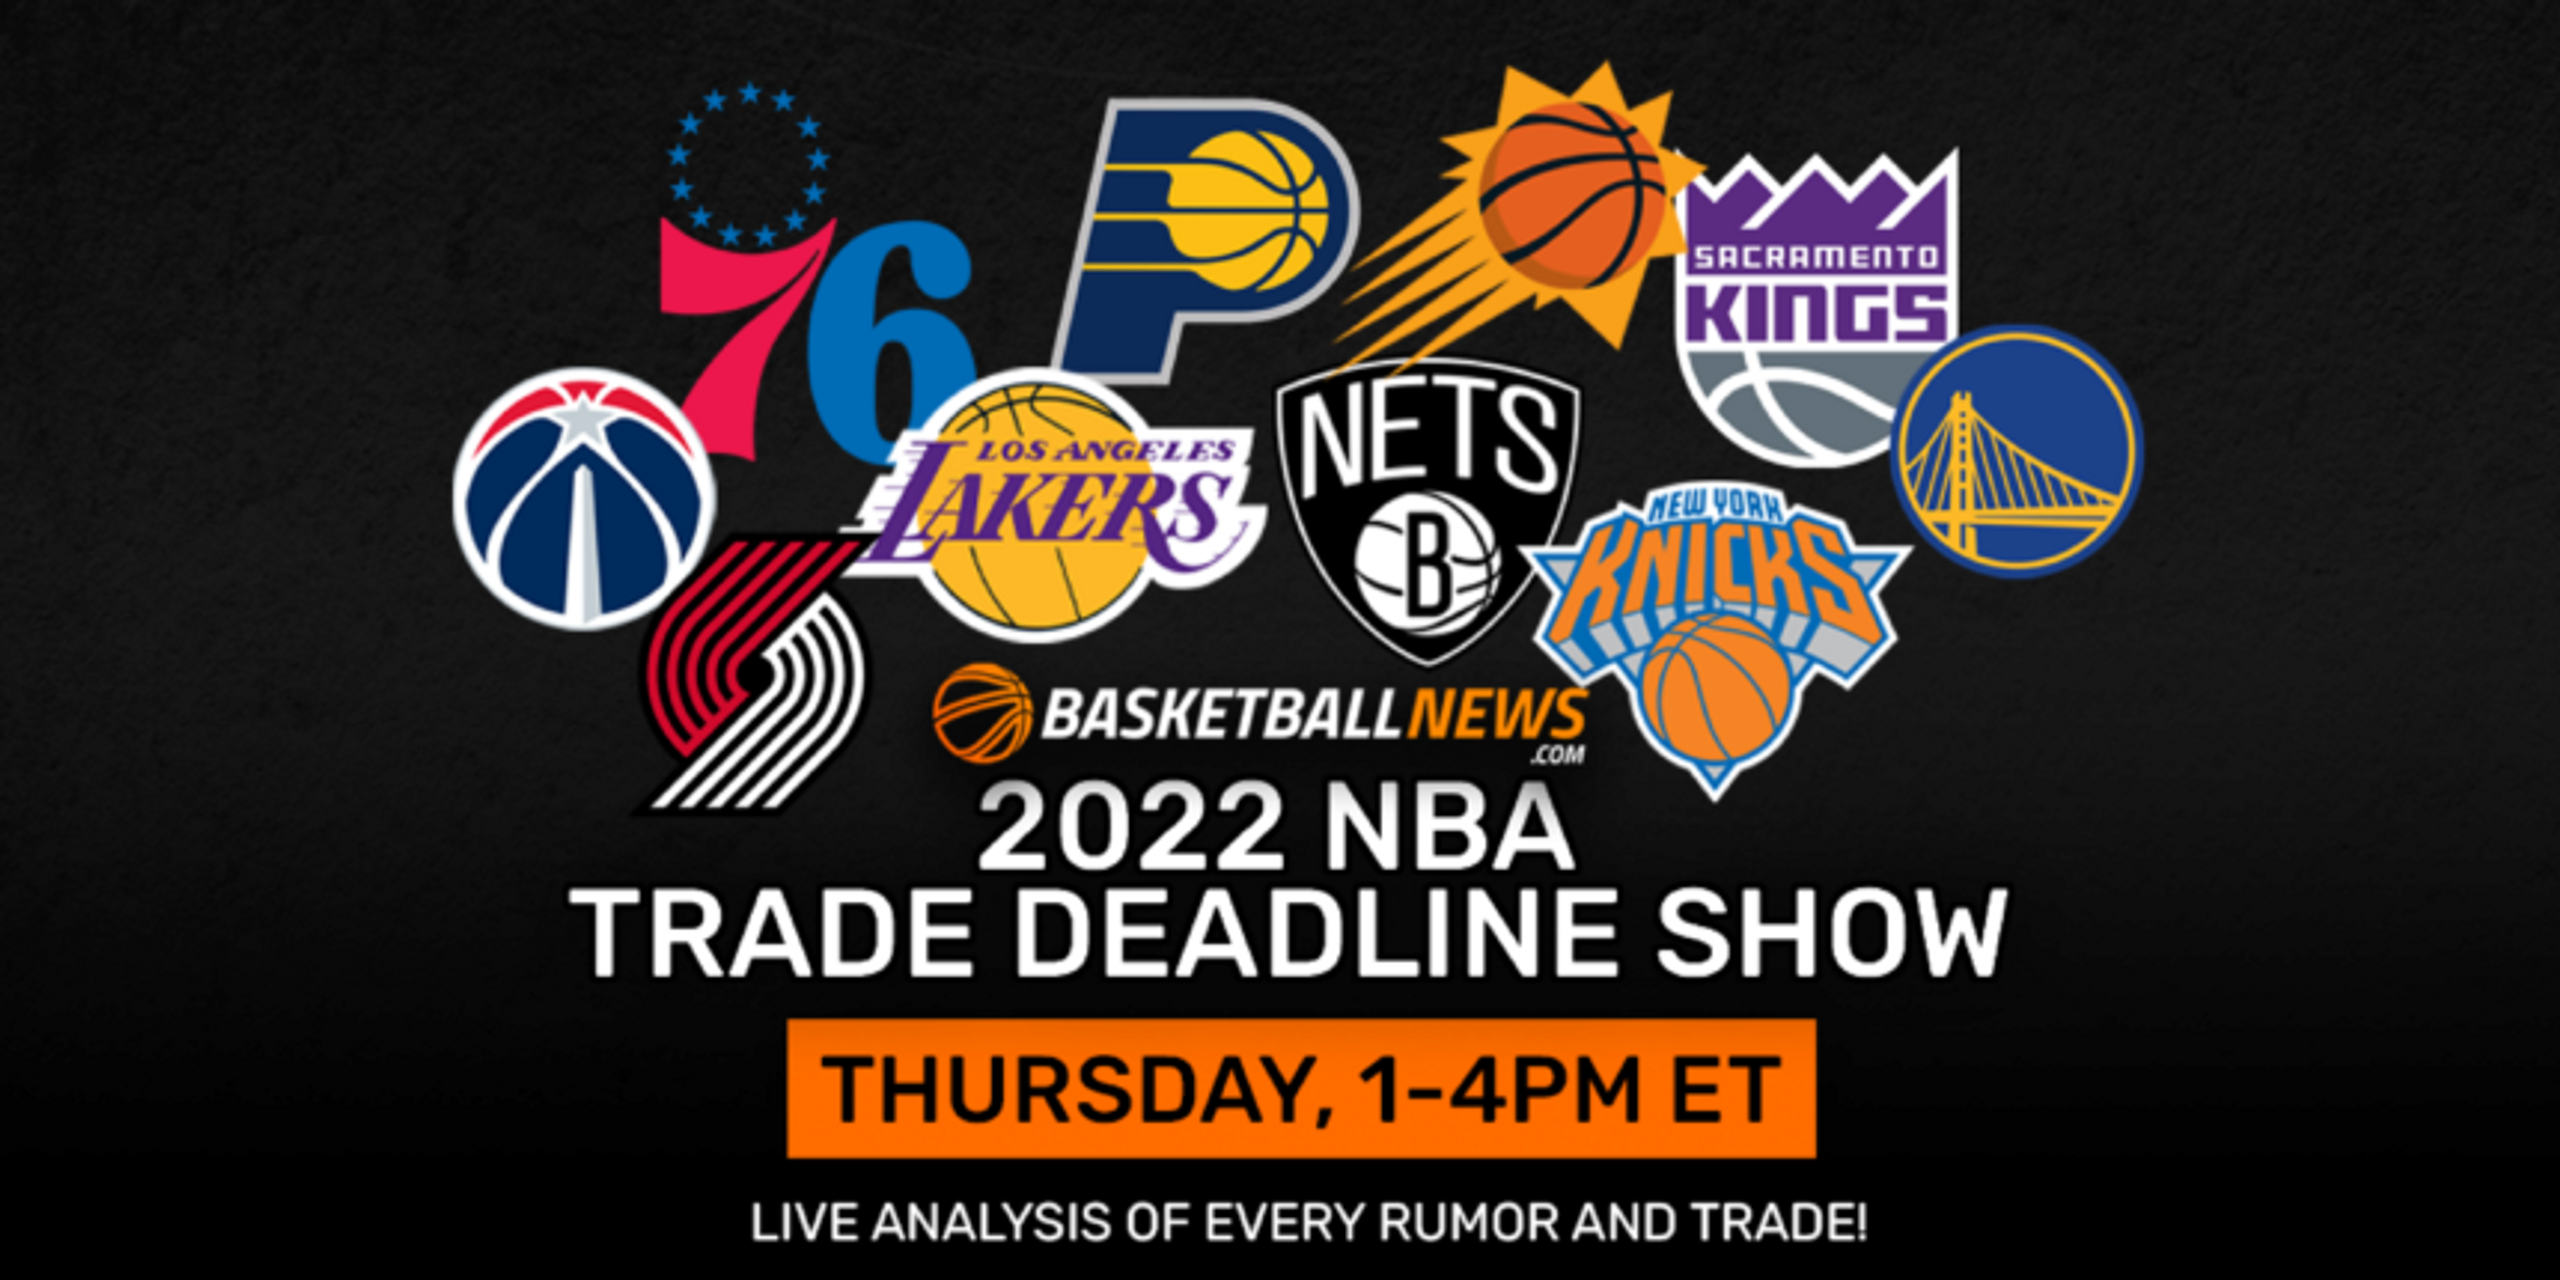 REPLAY: BasketballNews.com's 2022 NBA Trade Deadline Show